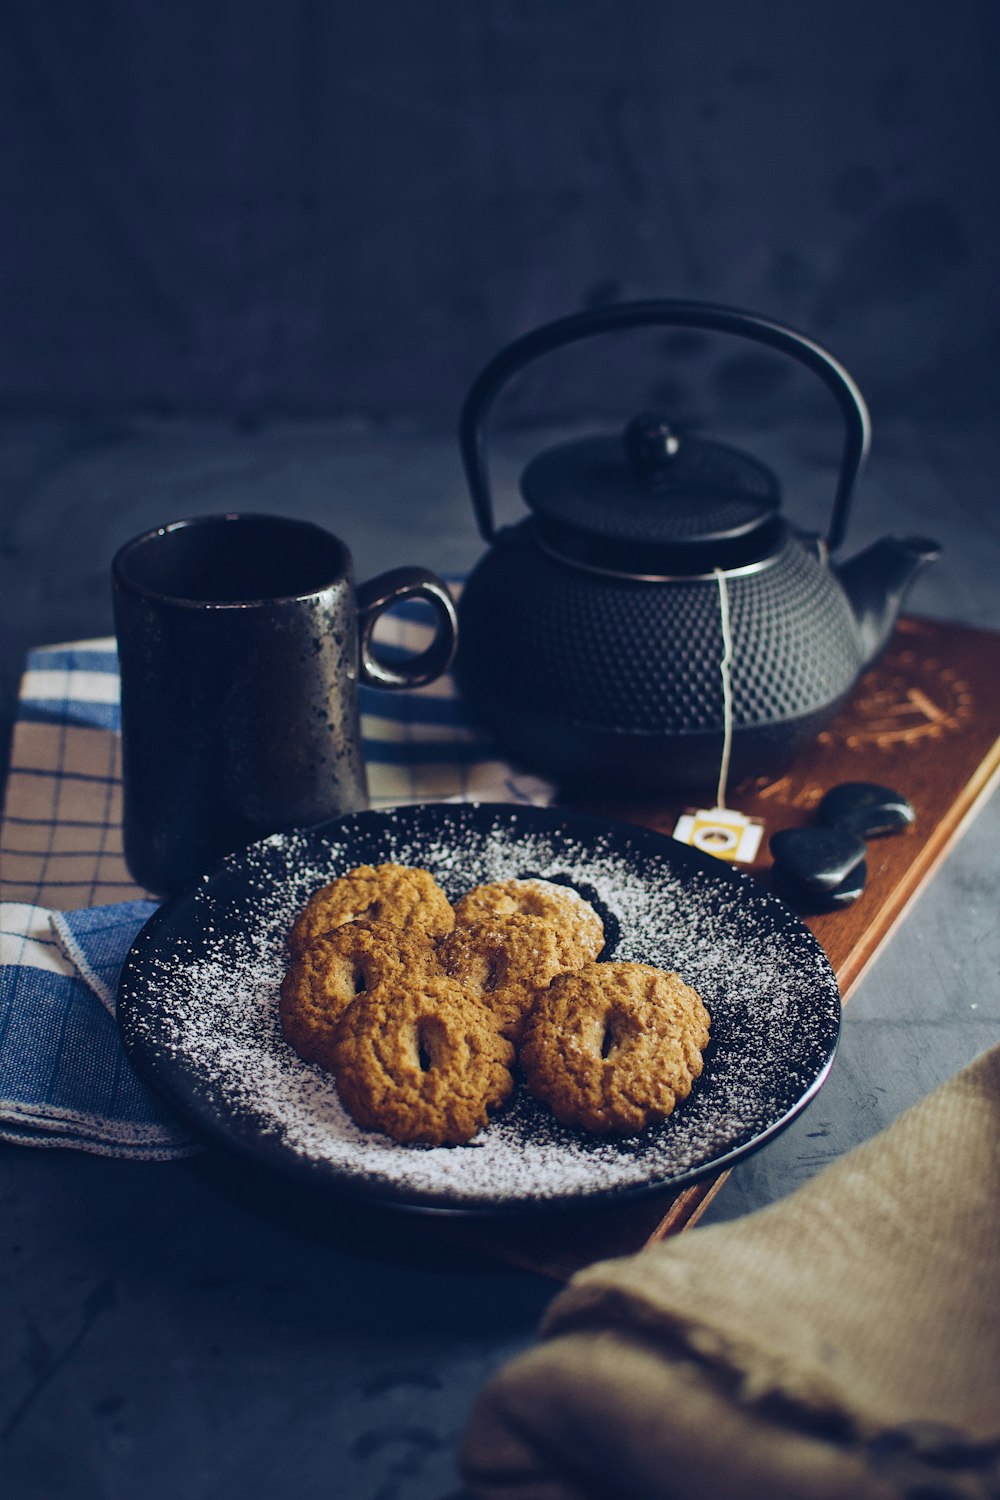 black ceramic mug beside brown cookies on blue ceramic plate